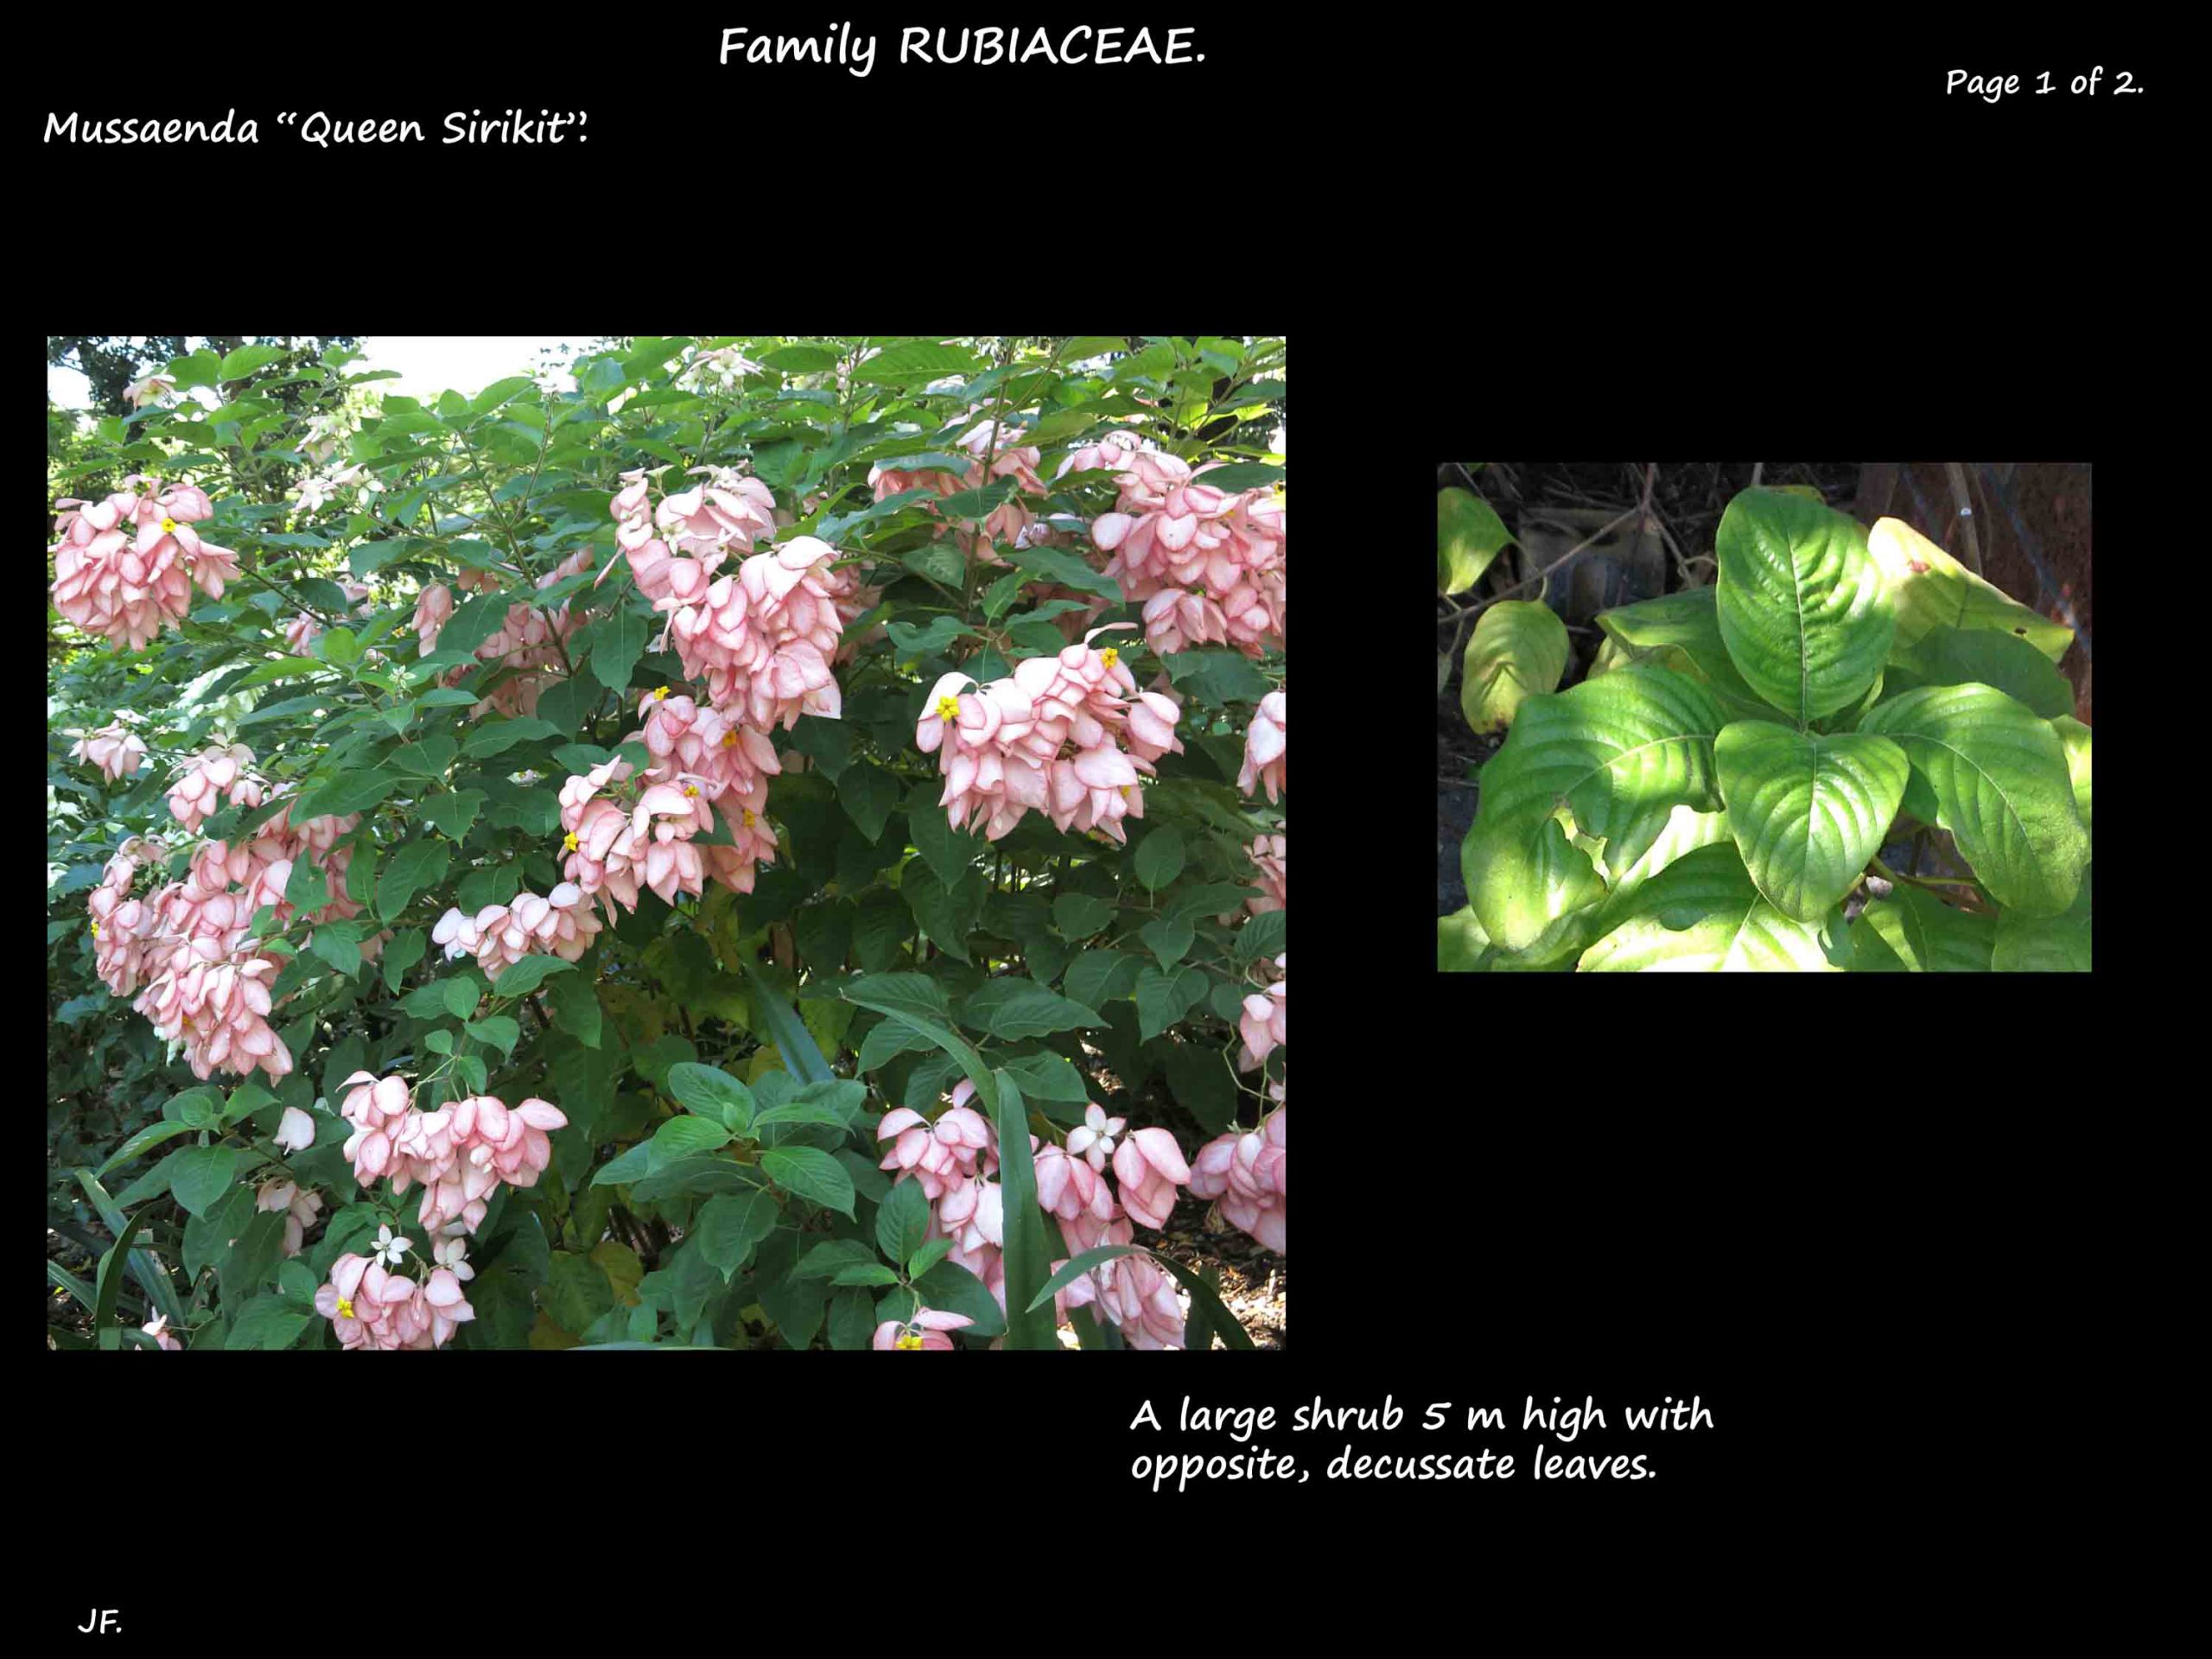 5 Queen 'Sirikit' shrub & leaves